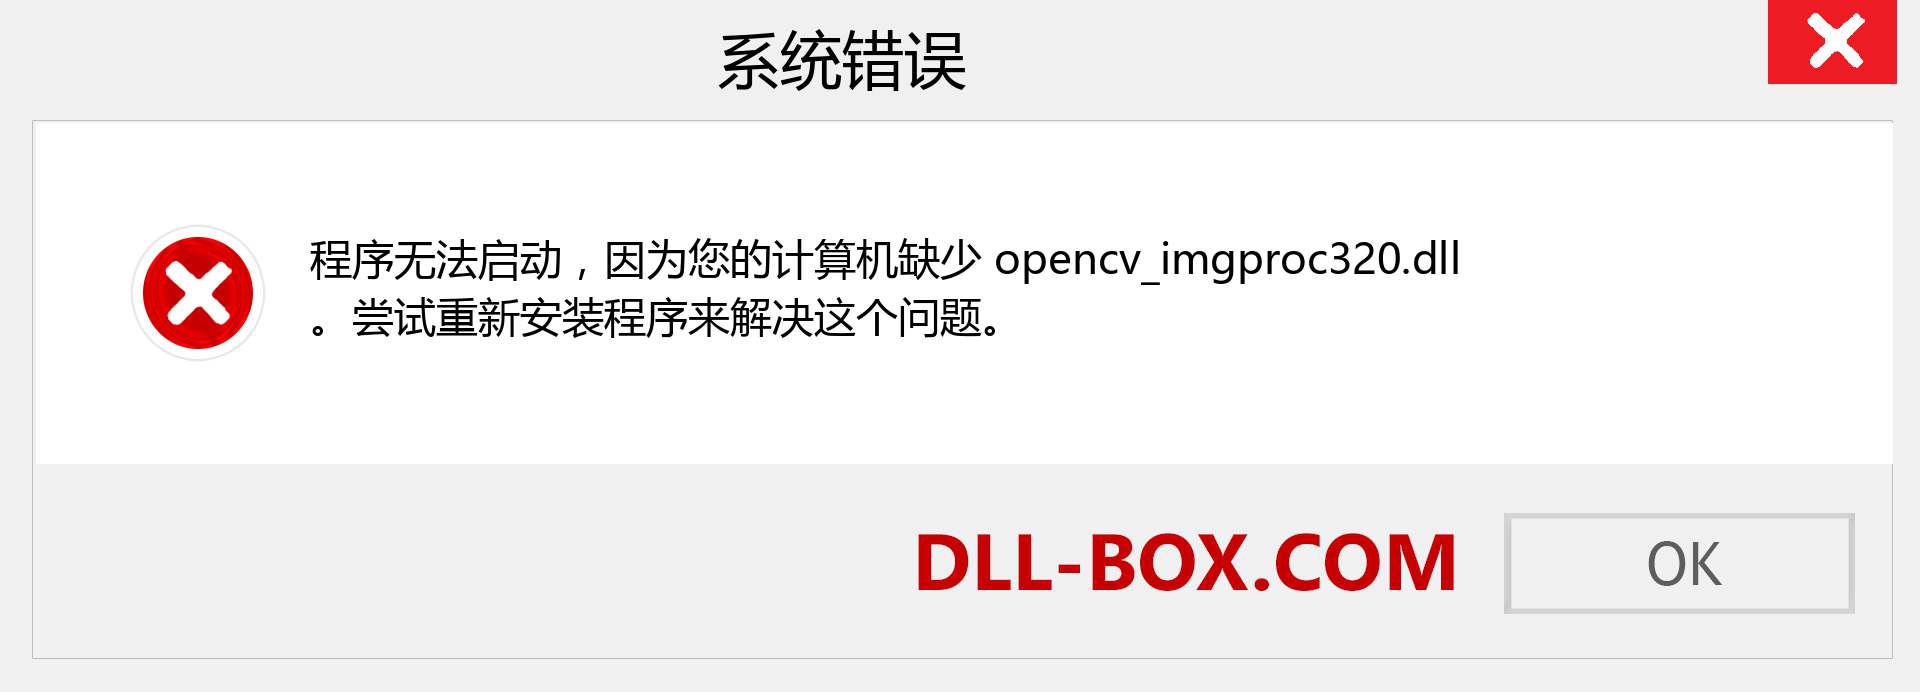 opencv_imgproc320.dll 文件丢失？。 适用于 Windows 7、8、10 的下载 - 修复 Windows、照片、图像上的 opencv_imgproc320 dll 丢失错误